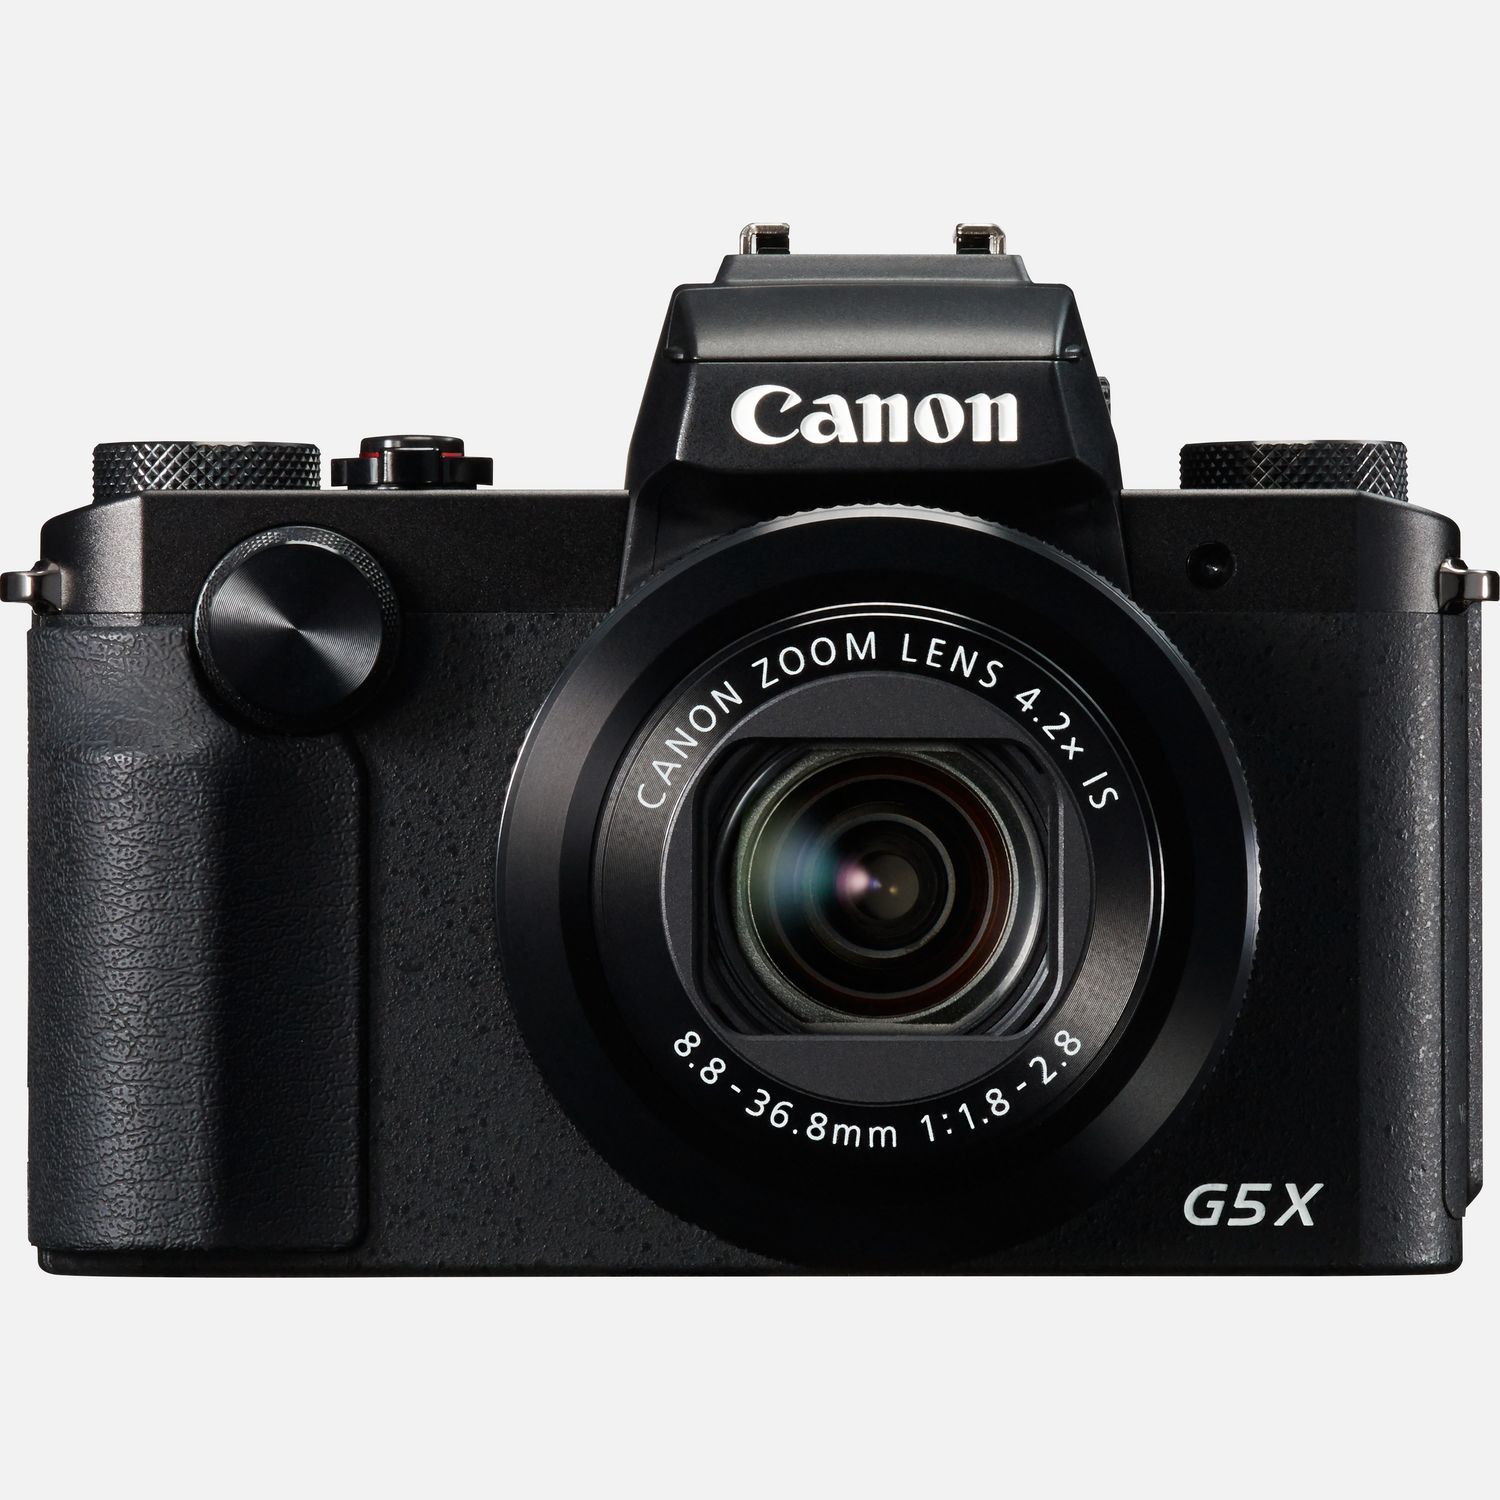 lecteur de carte First2savvv XJD-G5X-HH10 brun foncé Qualité supérieure PU cuir étui housse appareil photo numérique pour Canon PowerShot G5 X 